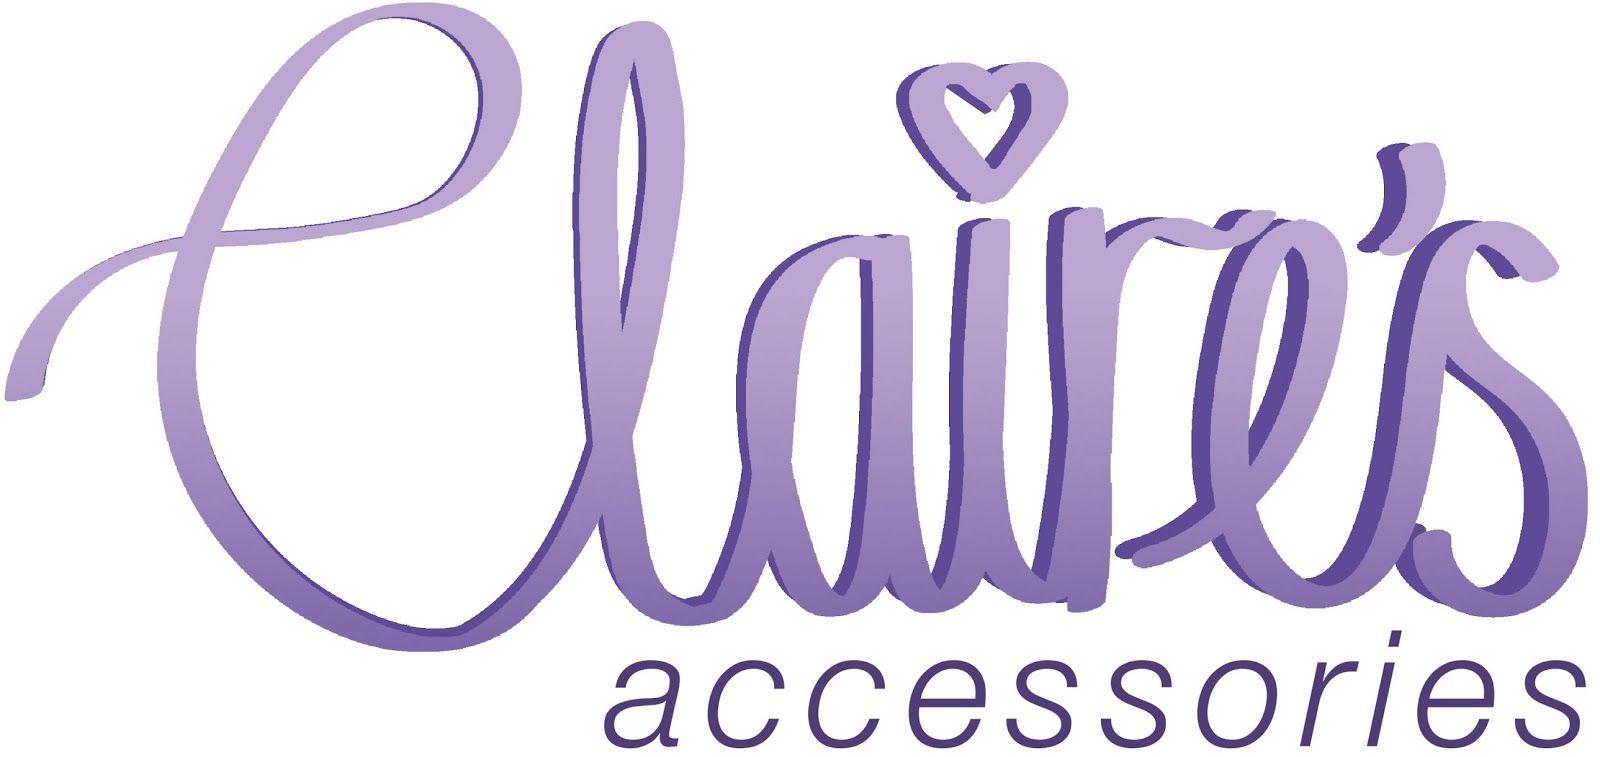 Claire's Logo - Studio Practice: Logotype - Claire's Accessories